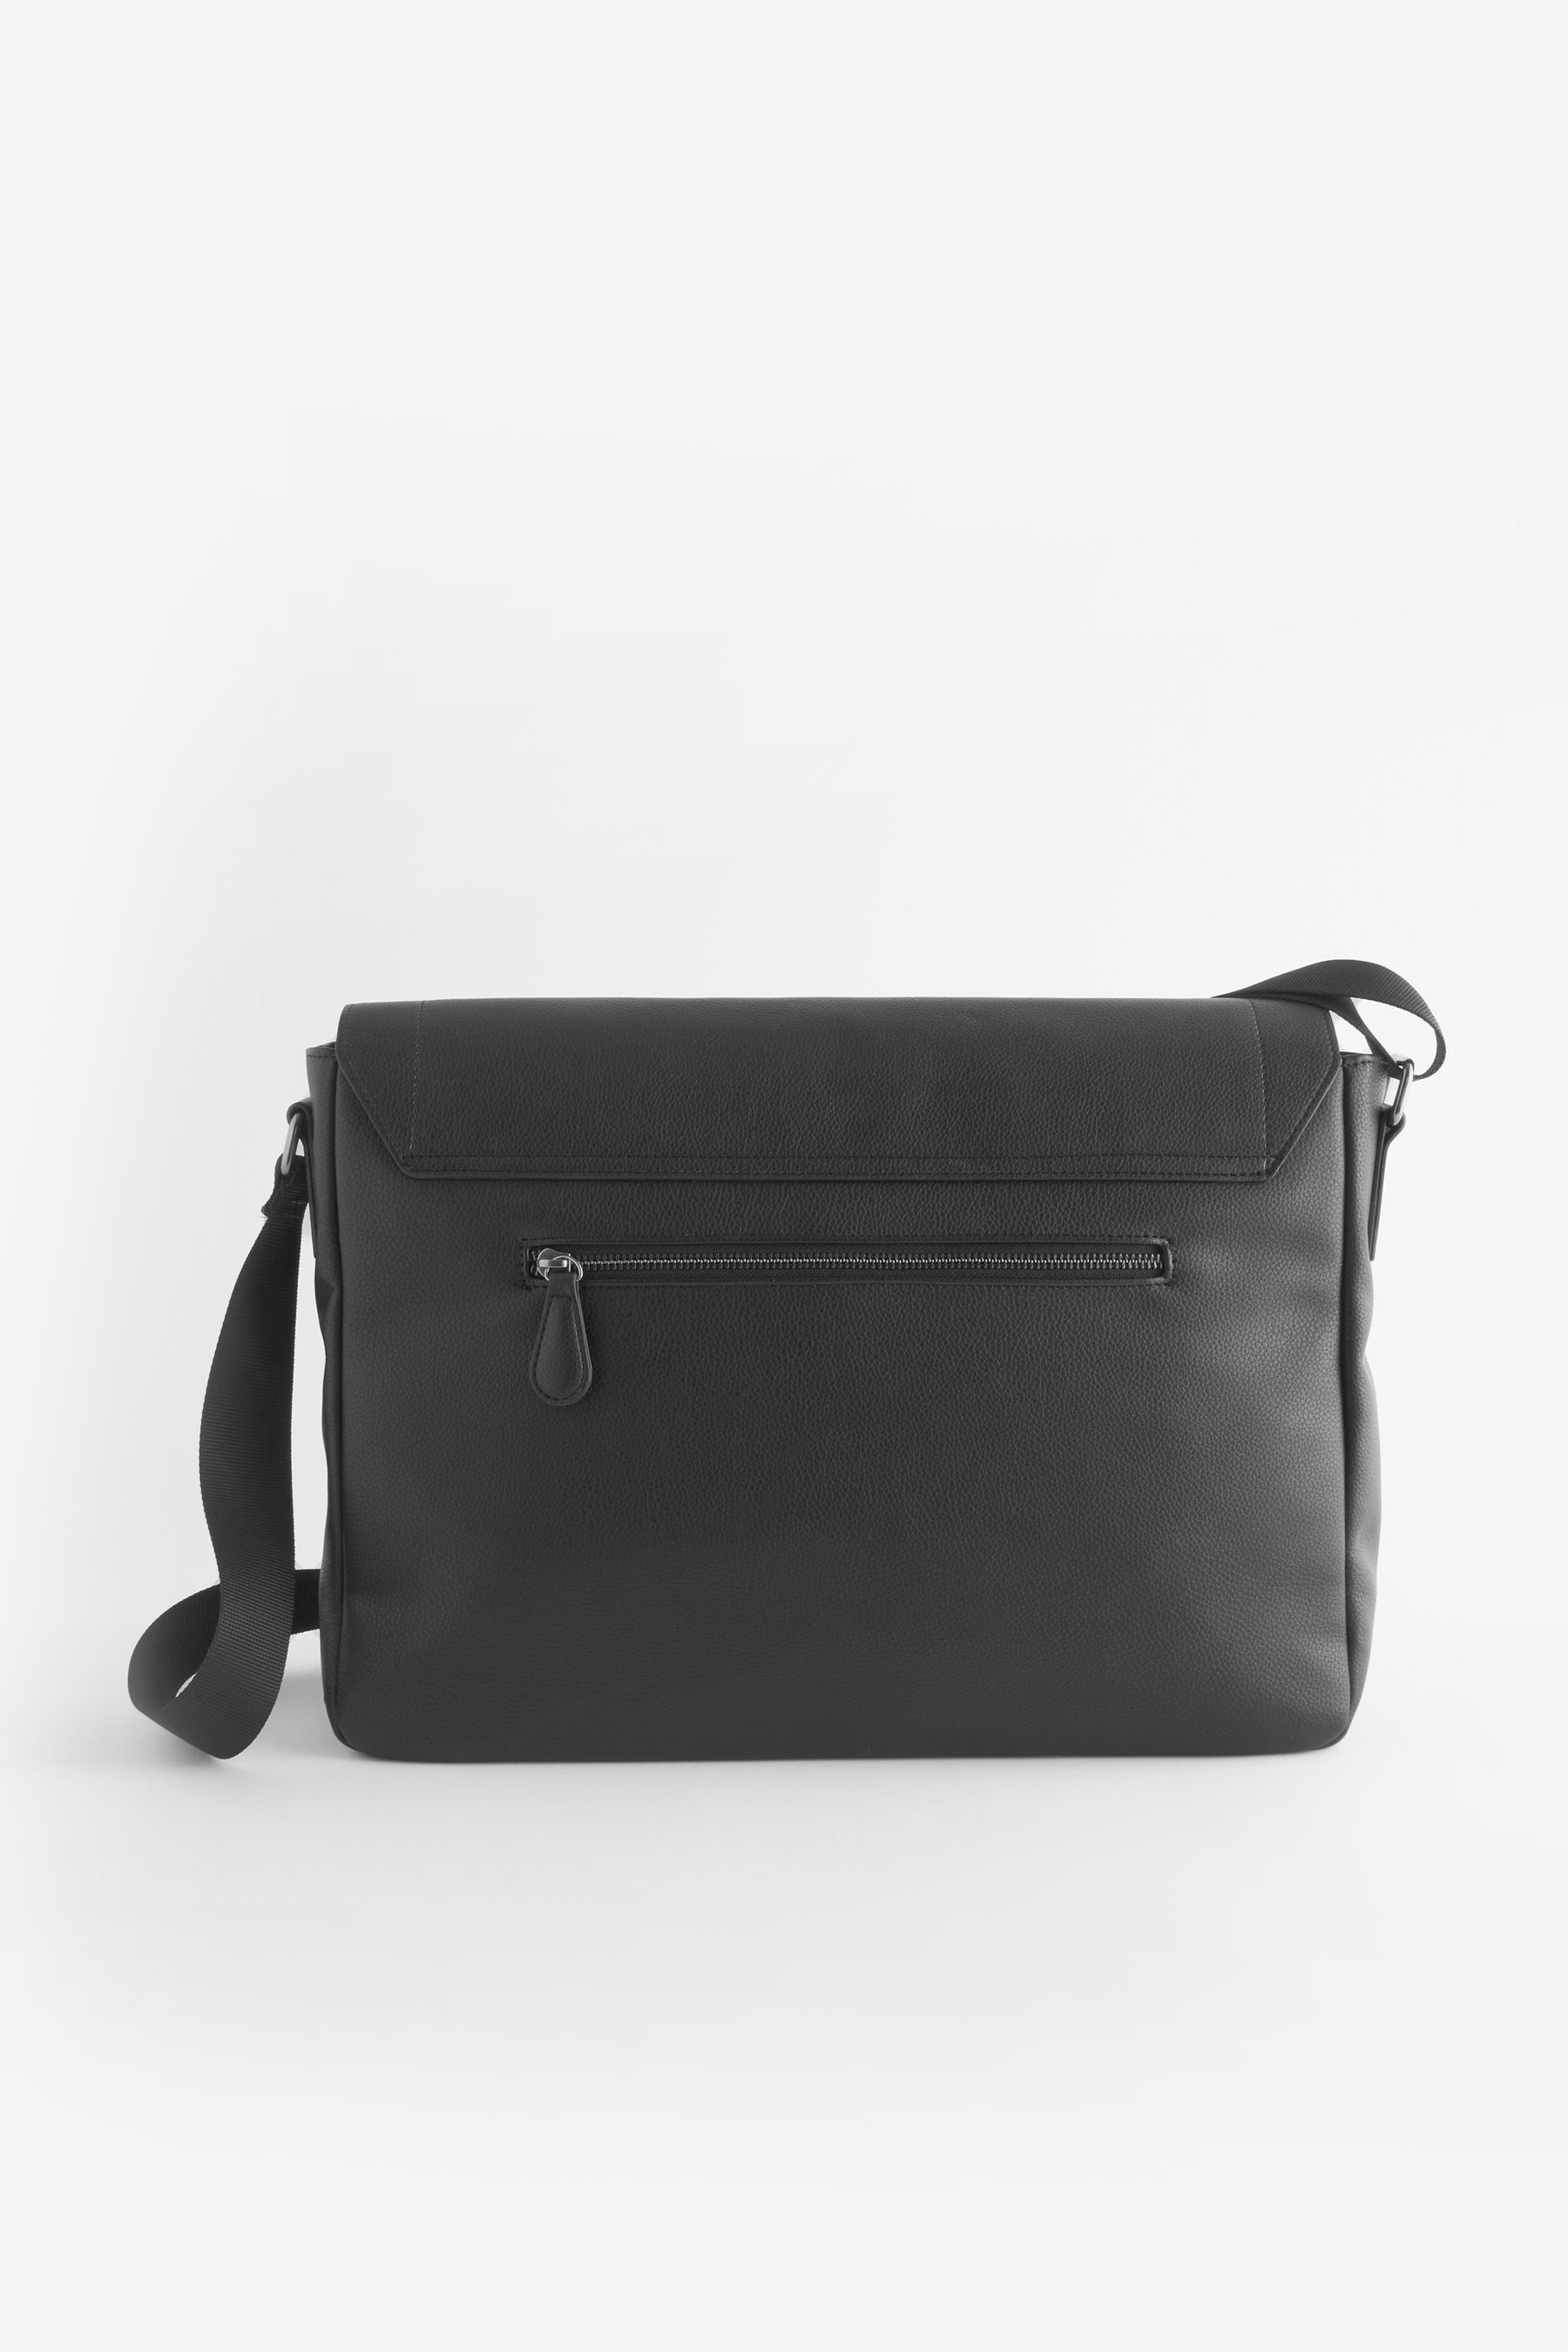 Buy Black Messenger Bag from the Next UK online shop